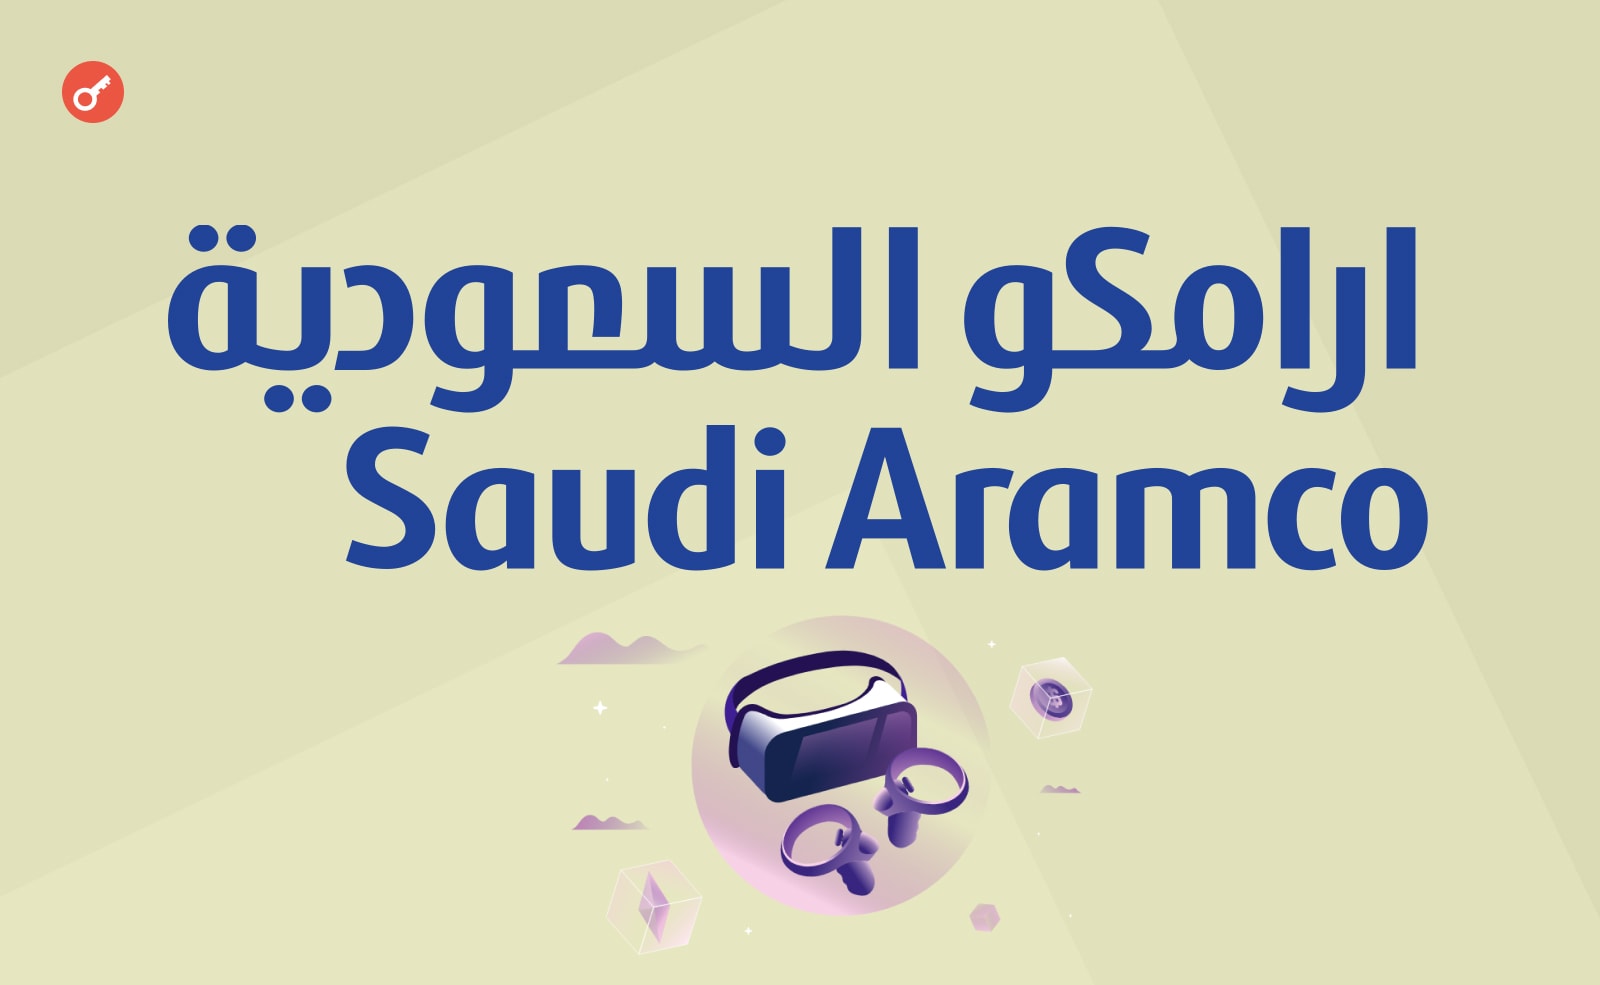 Энергетический гигант Saudi Aramco подписал партнерство с брендом droppGroup.